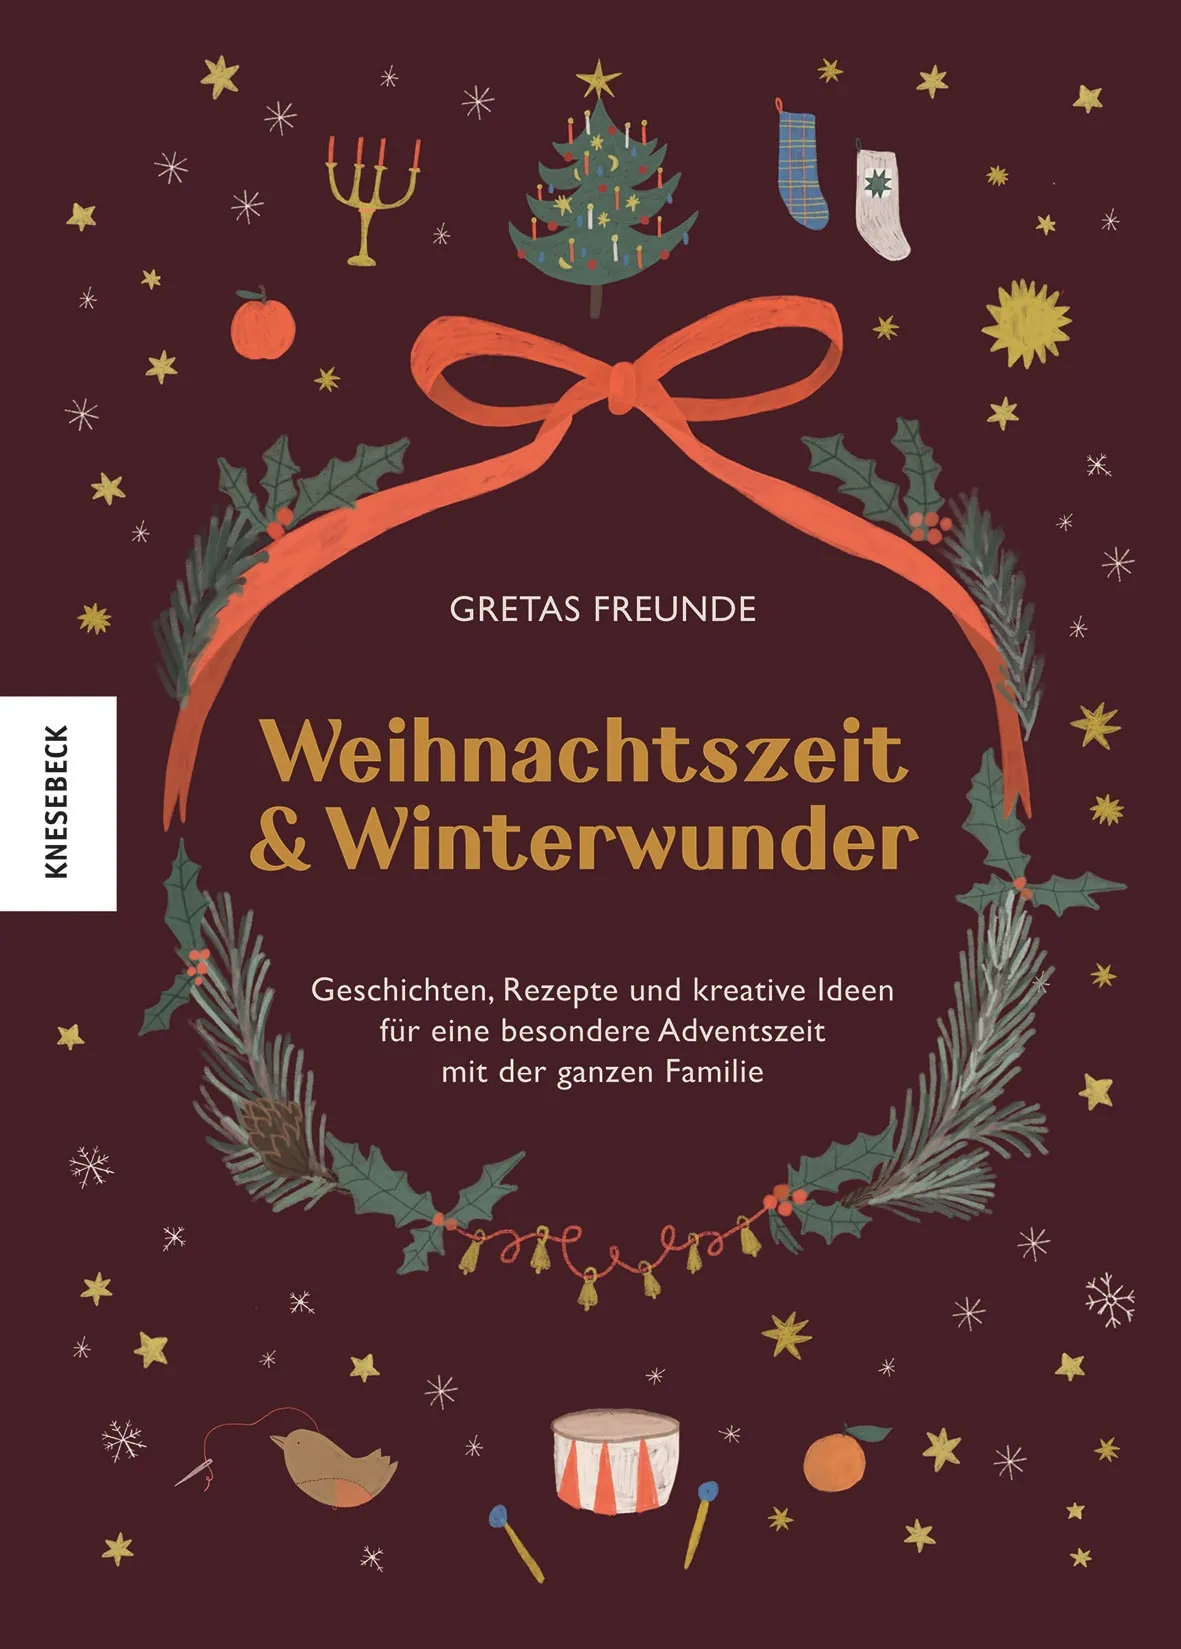 Zapfenfutter Aus Weihnachtszeit Und Winterwunder // Himbeer 